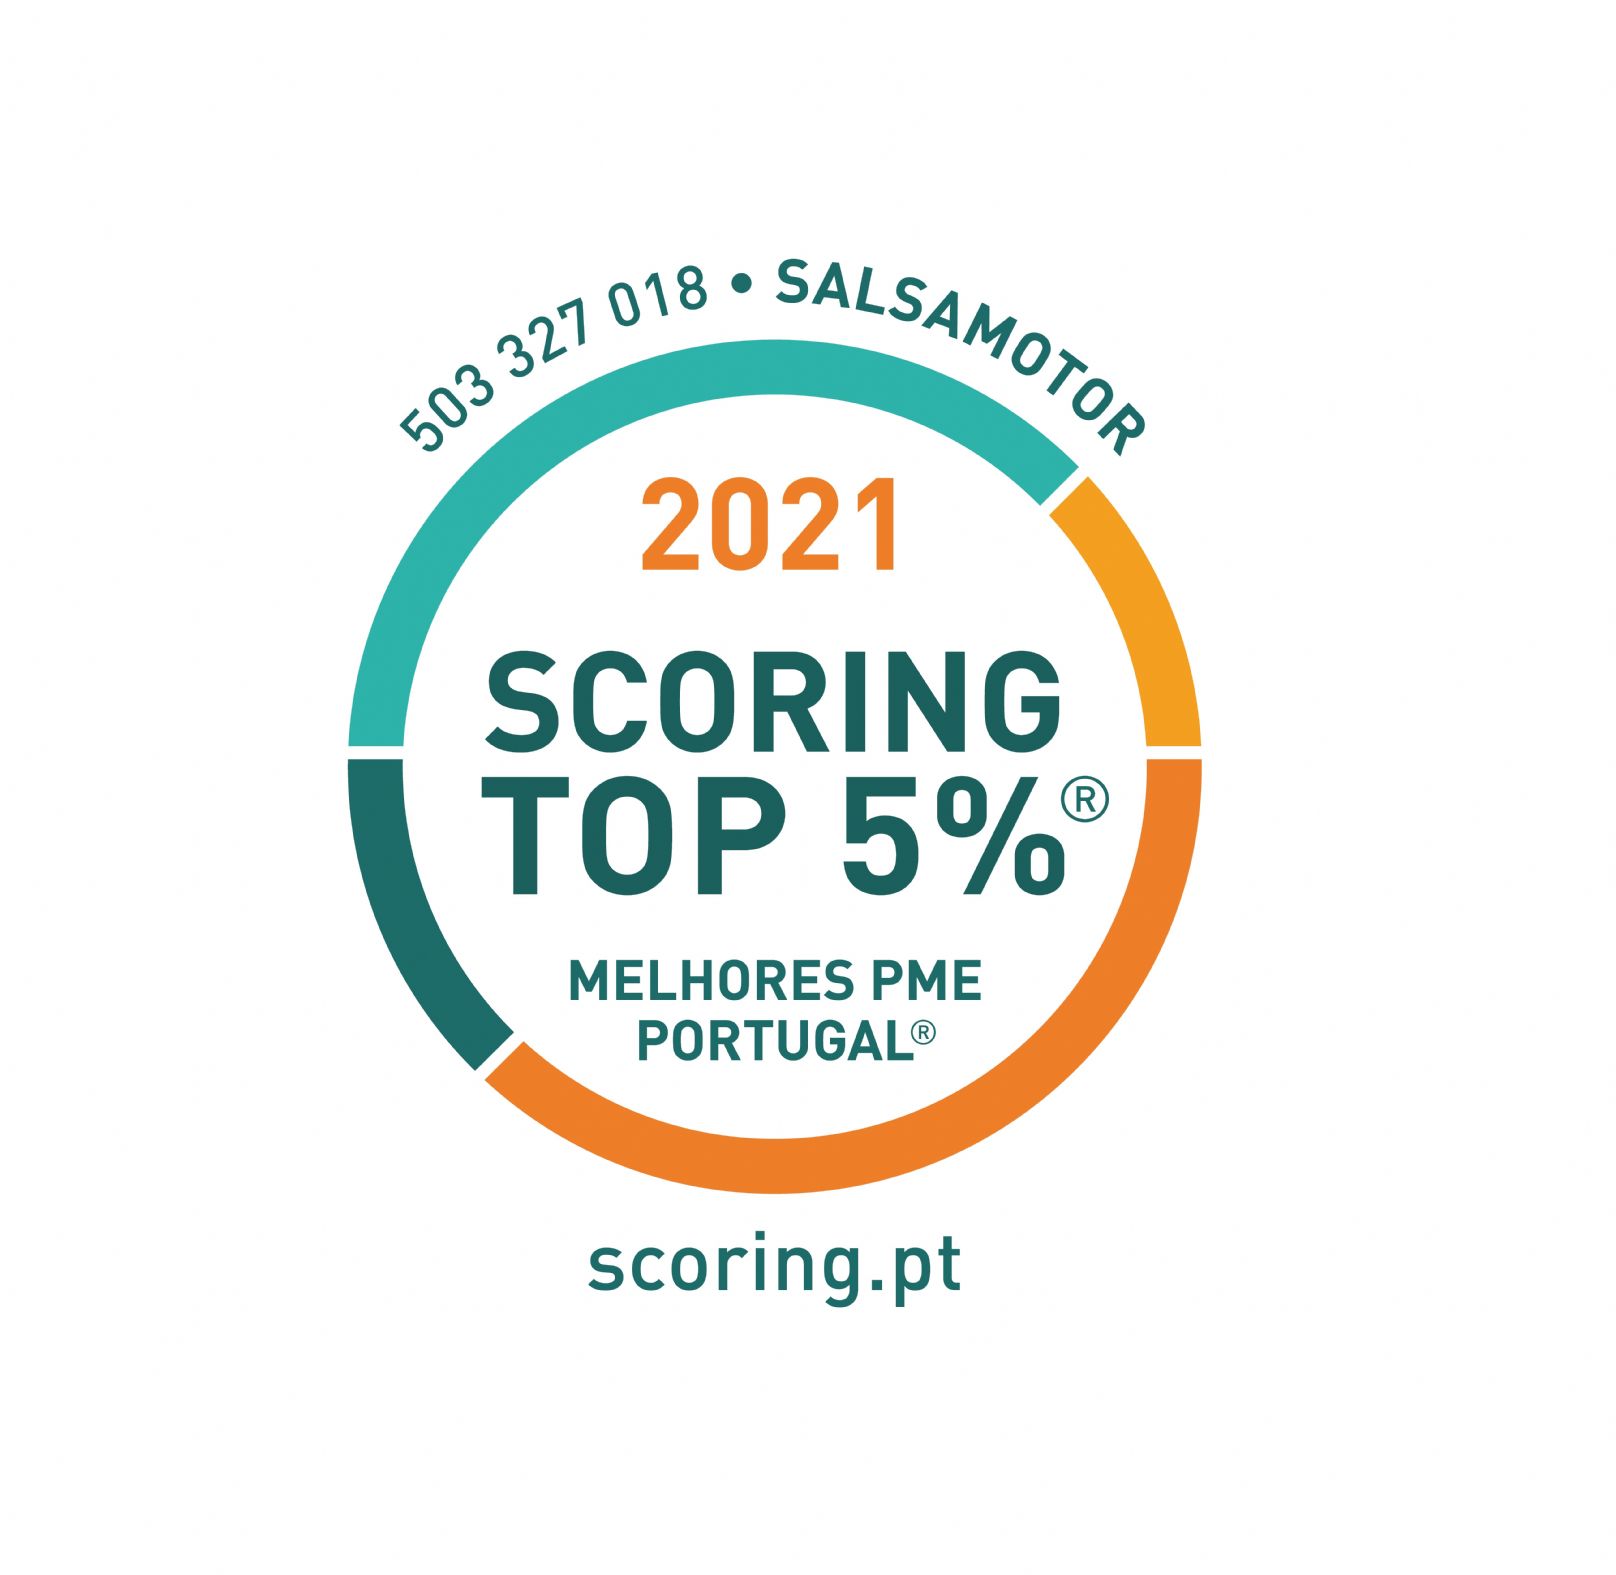 Salsamotor distinguida como empresa TOP 5% MELHORES PME DE PORTUGAL